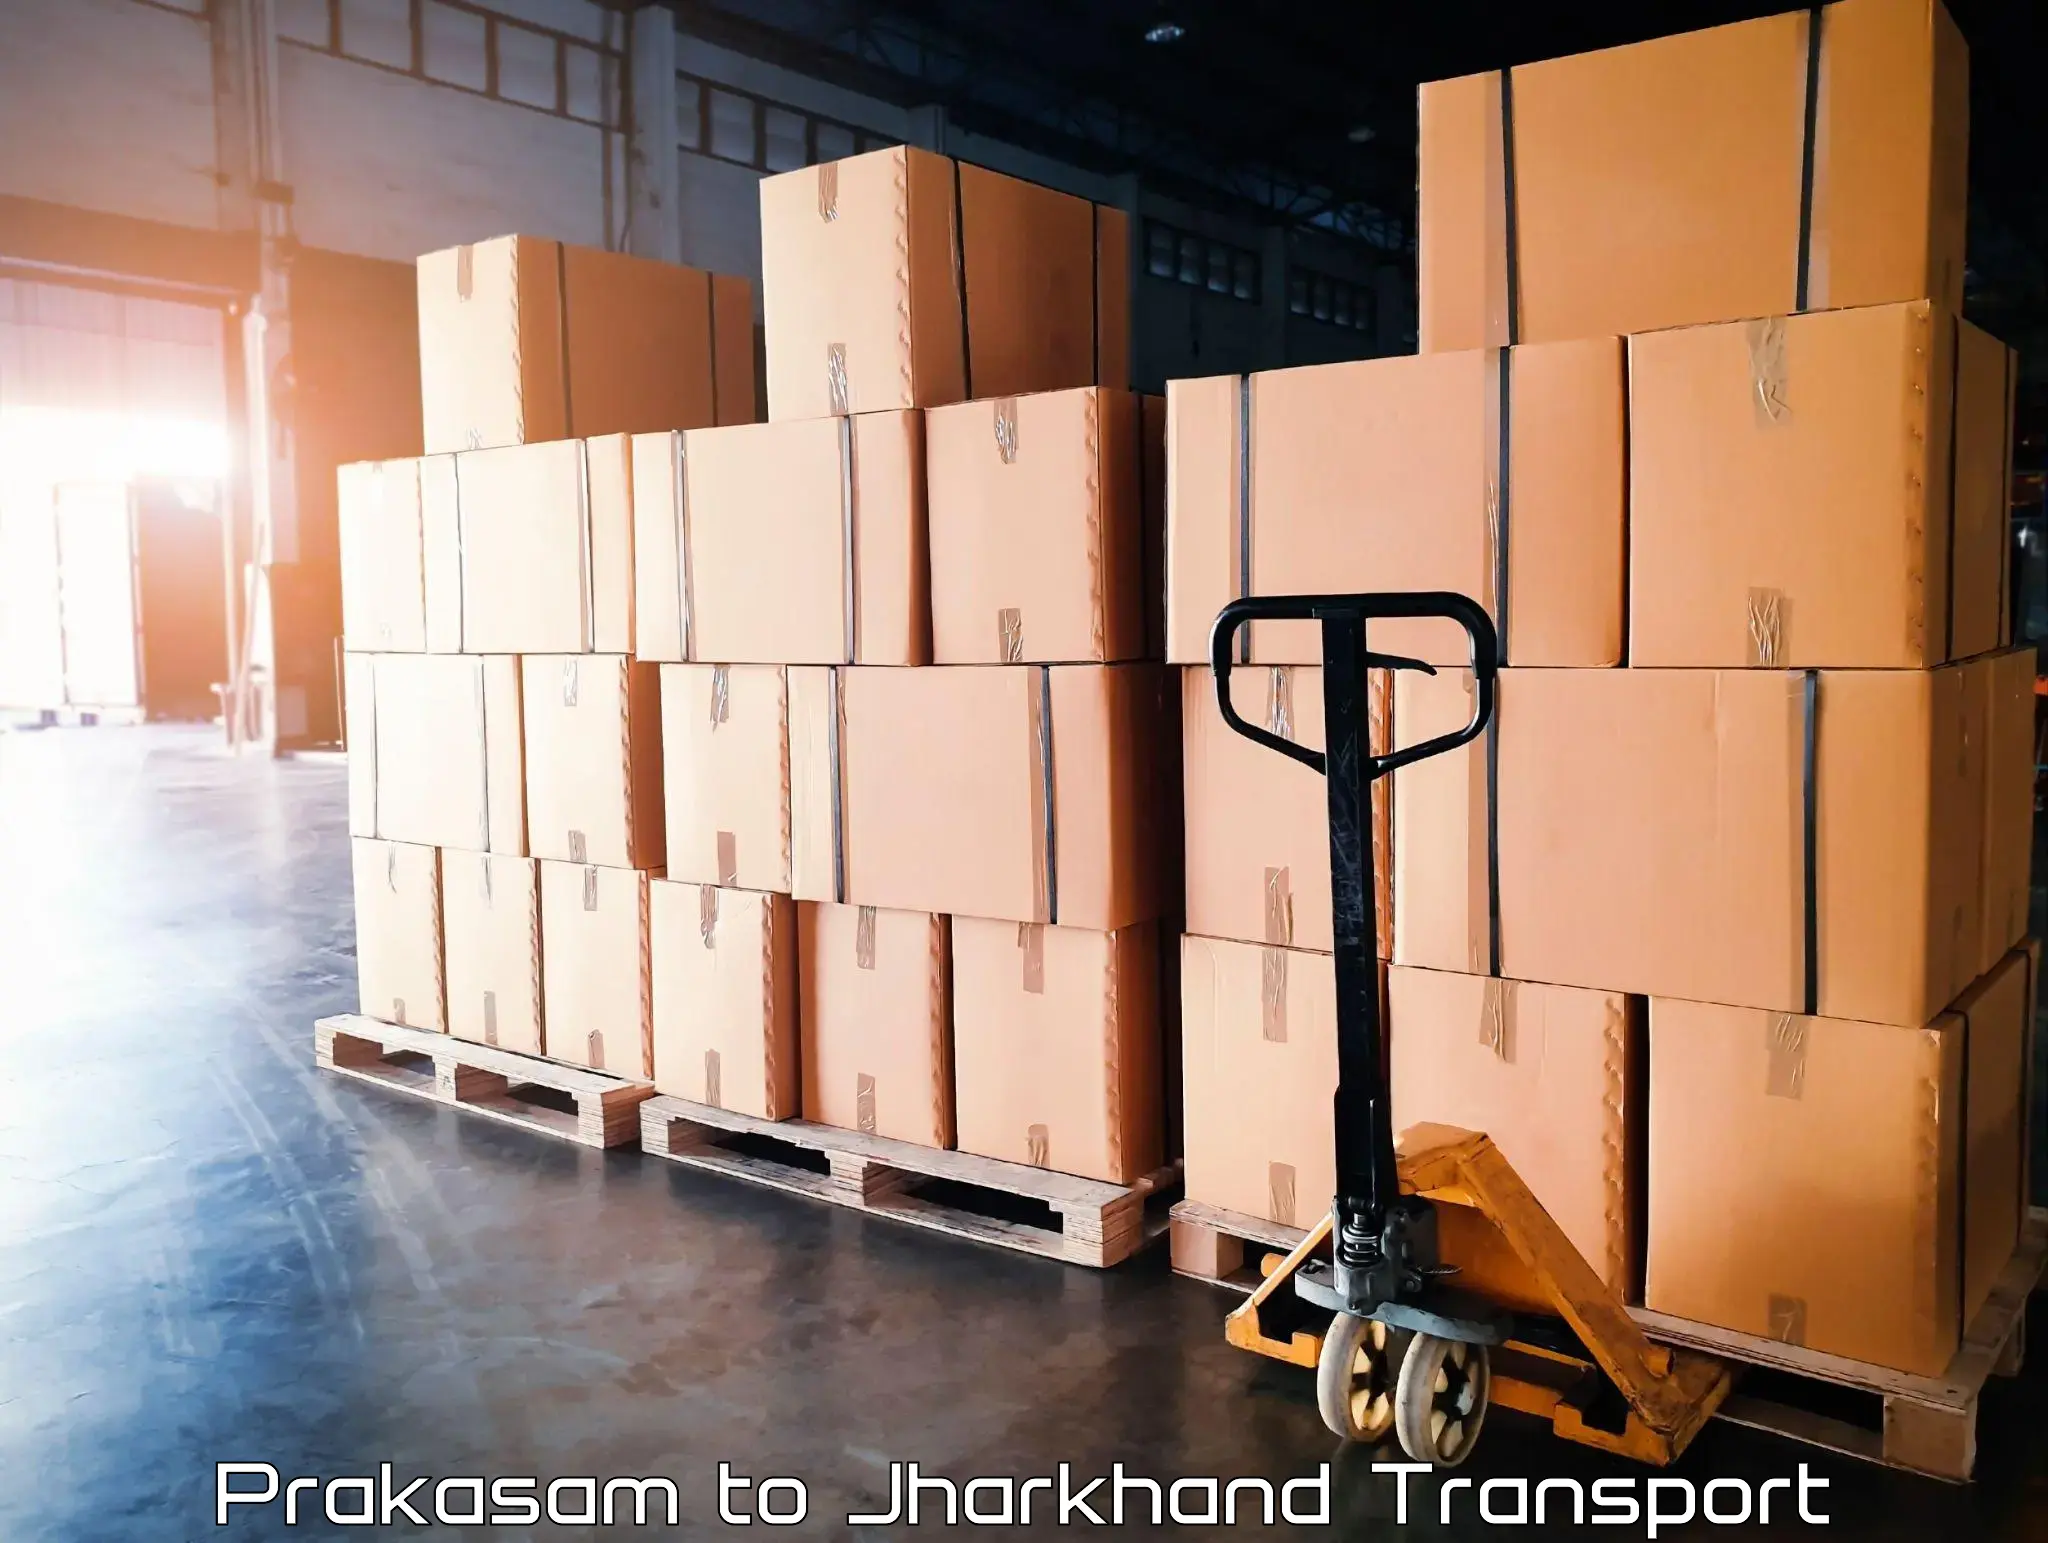 Online transport service Prakasam to Medininagar